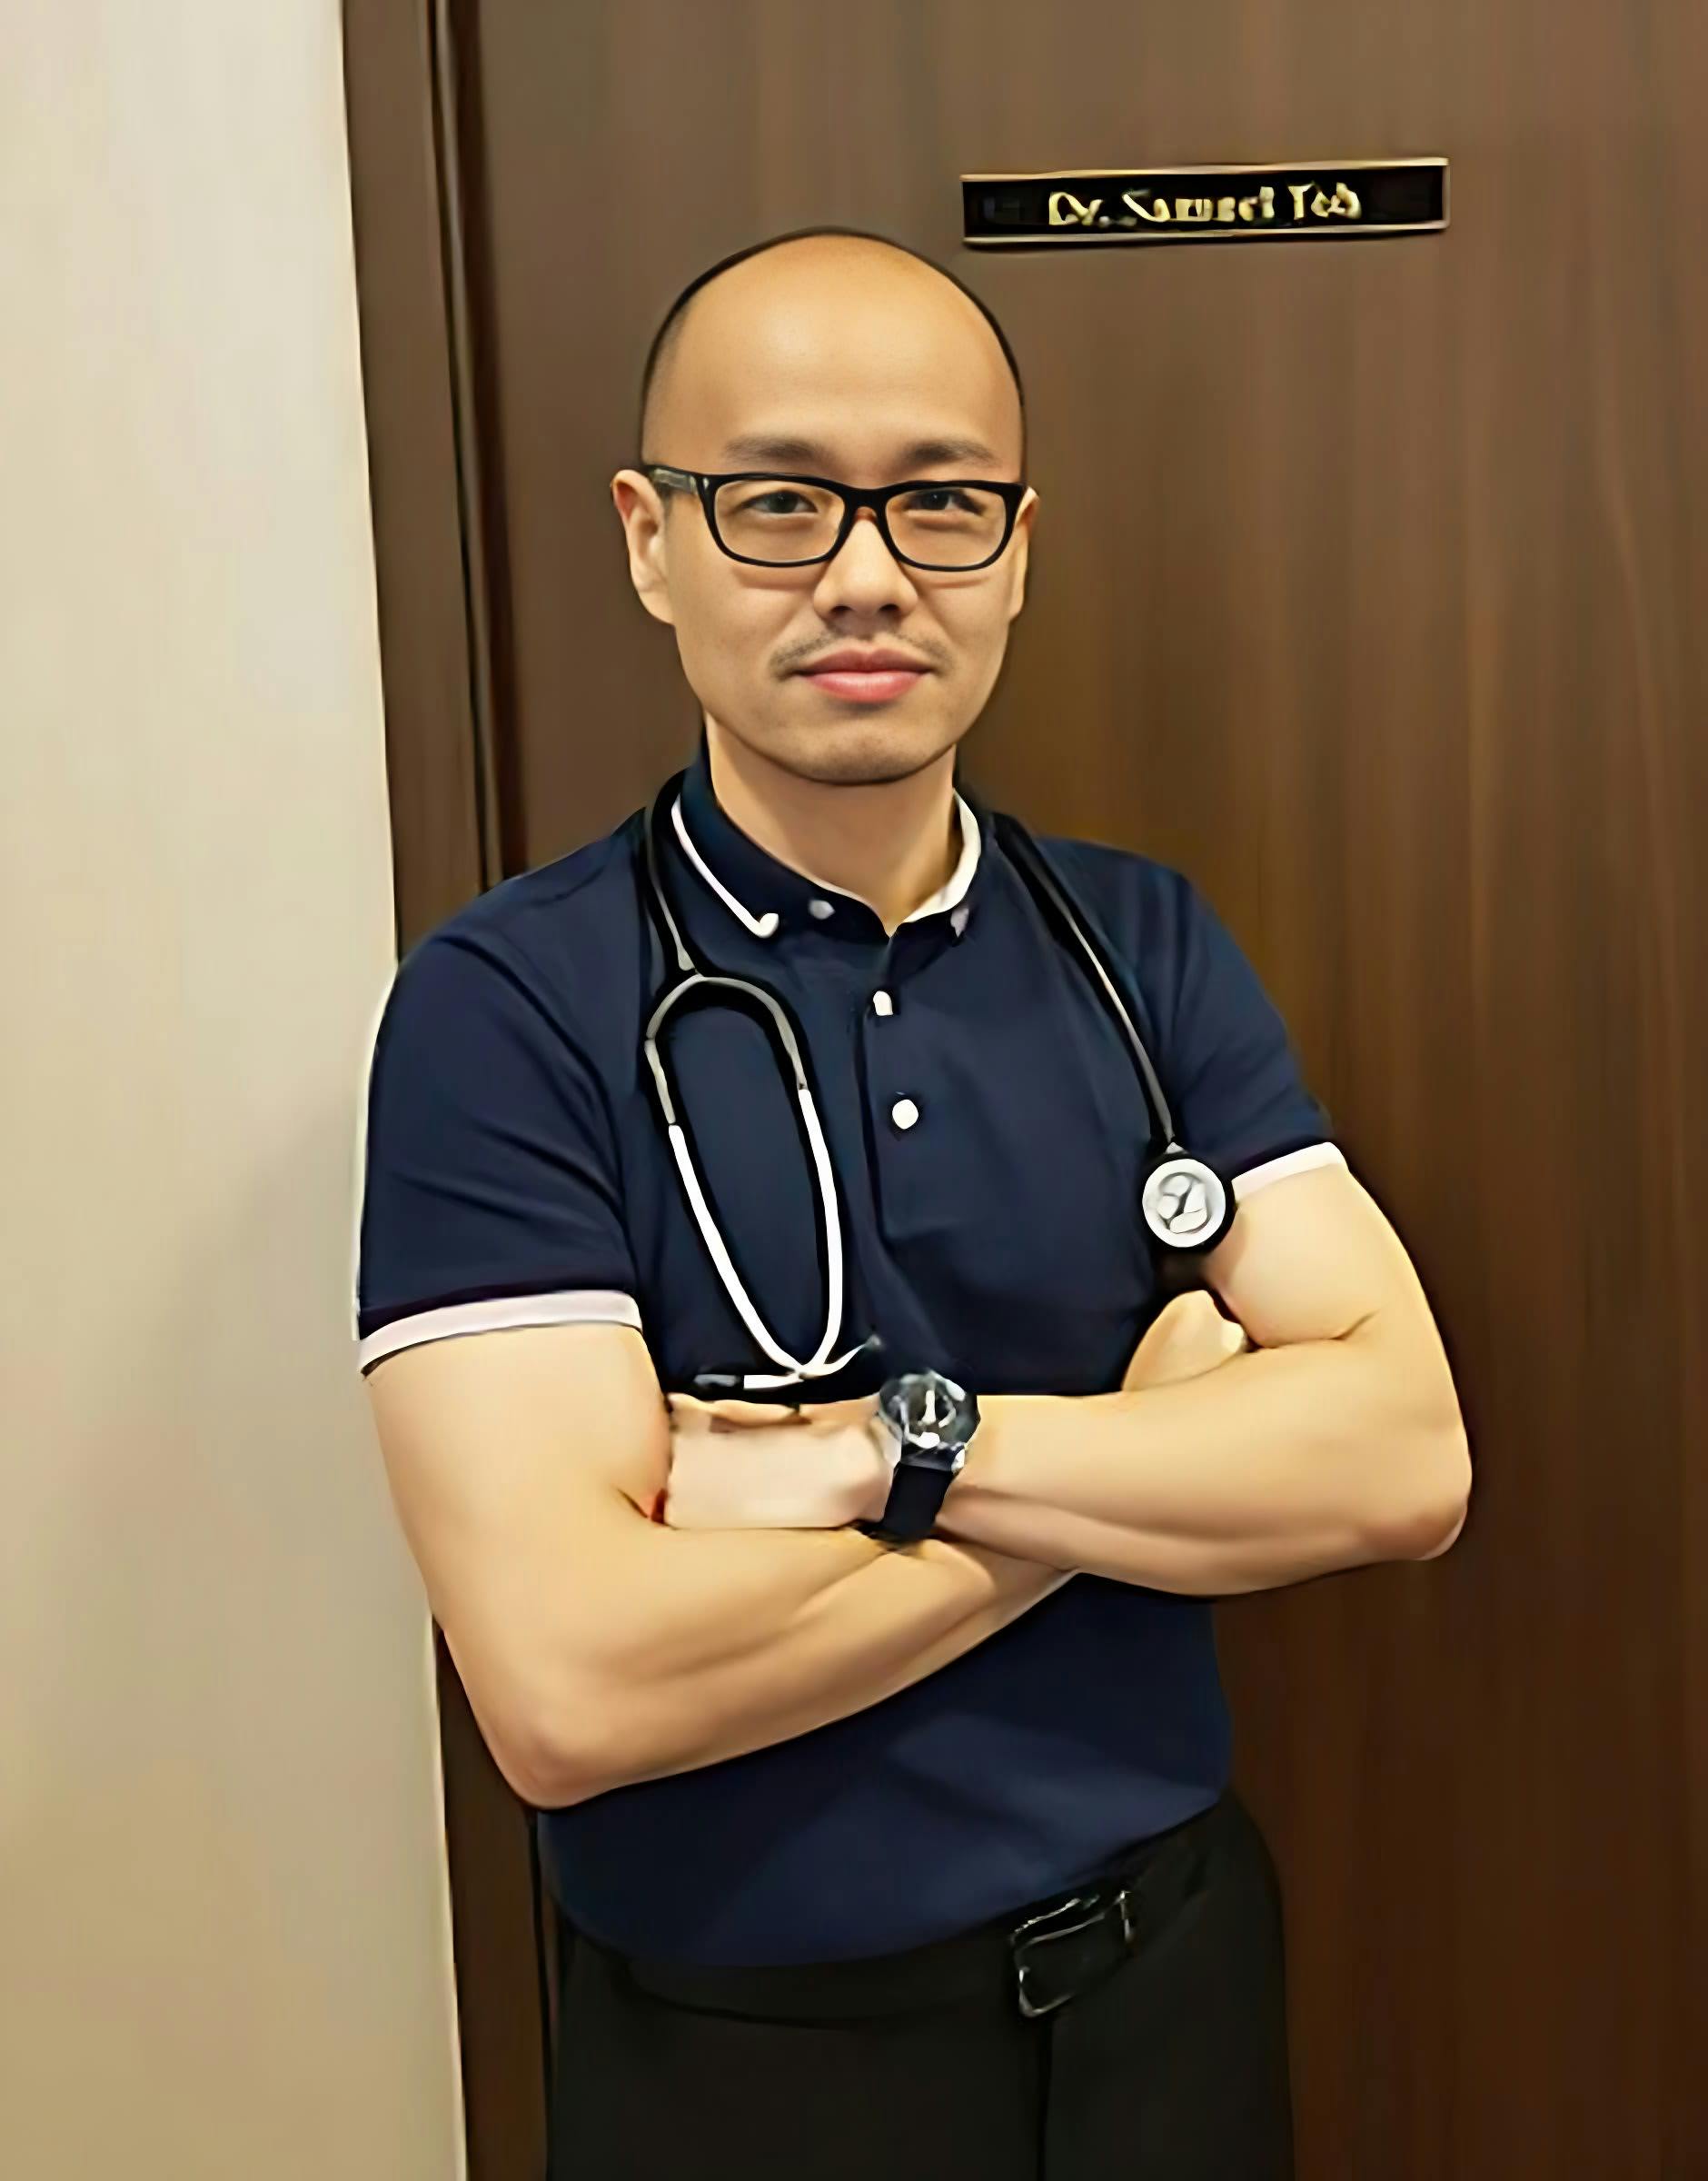 Dr. Sam Toh